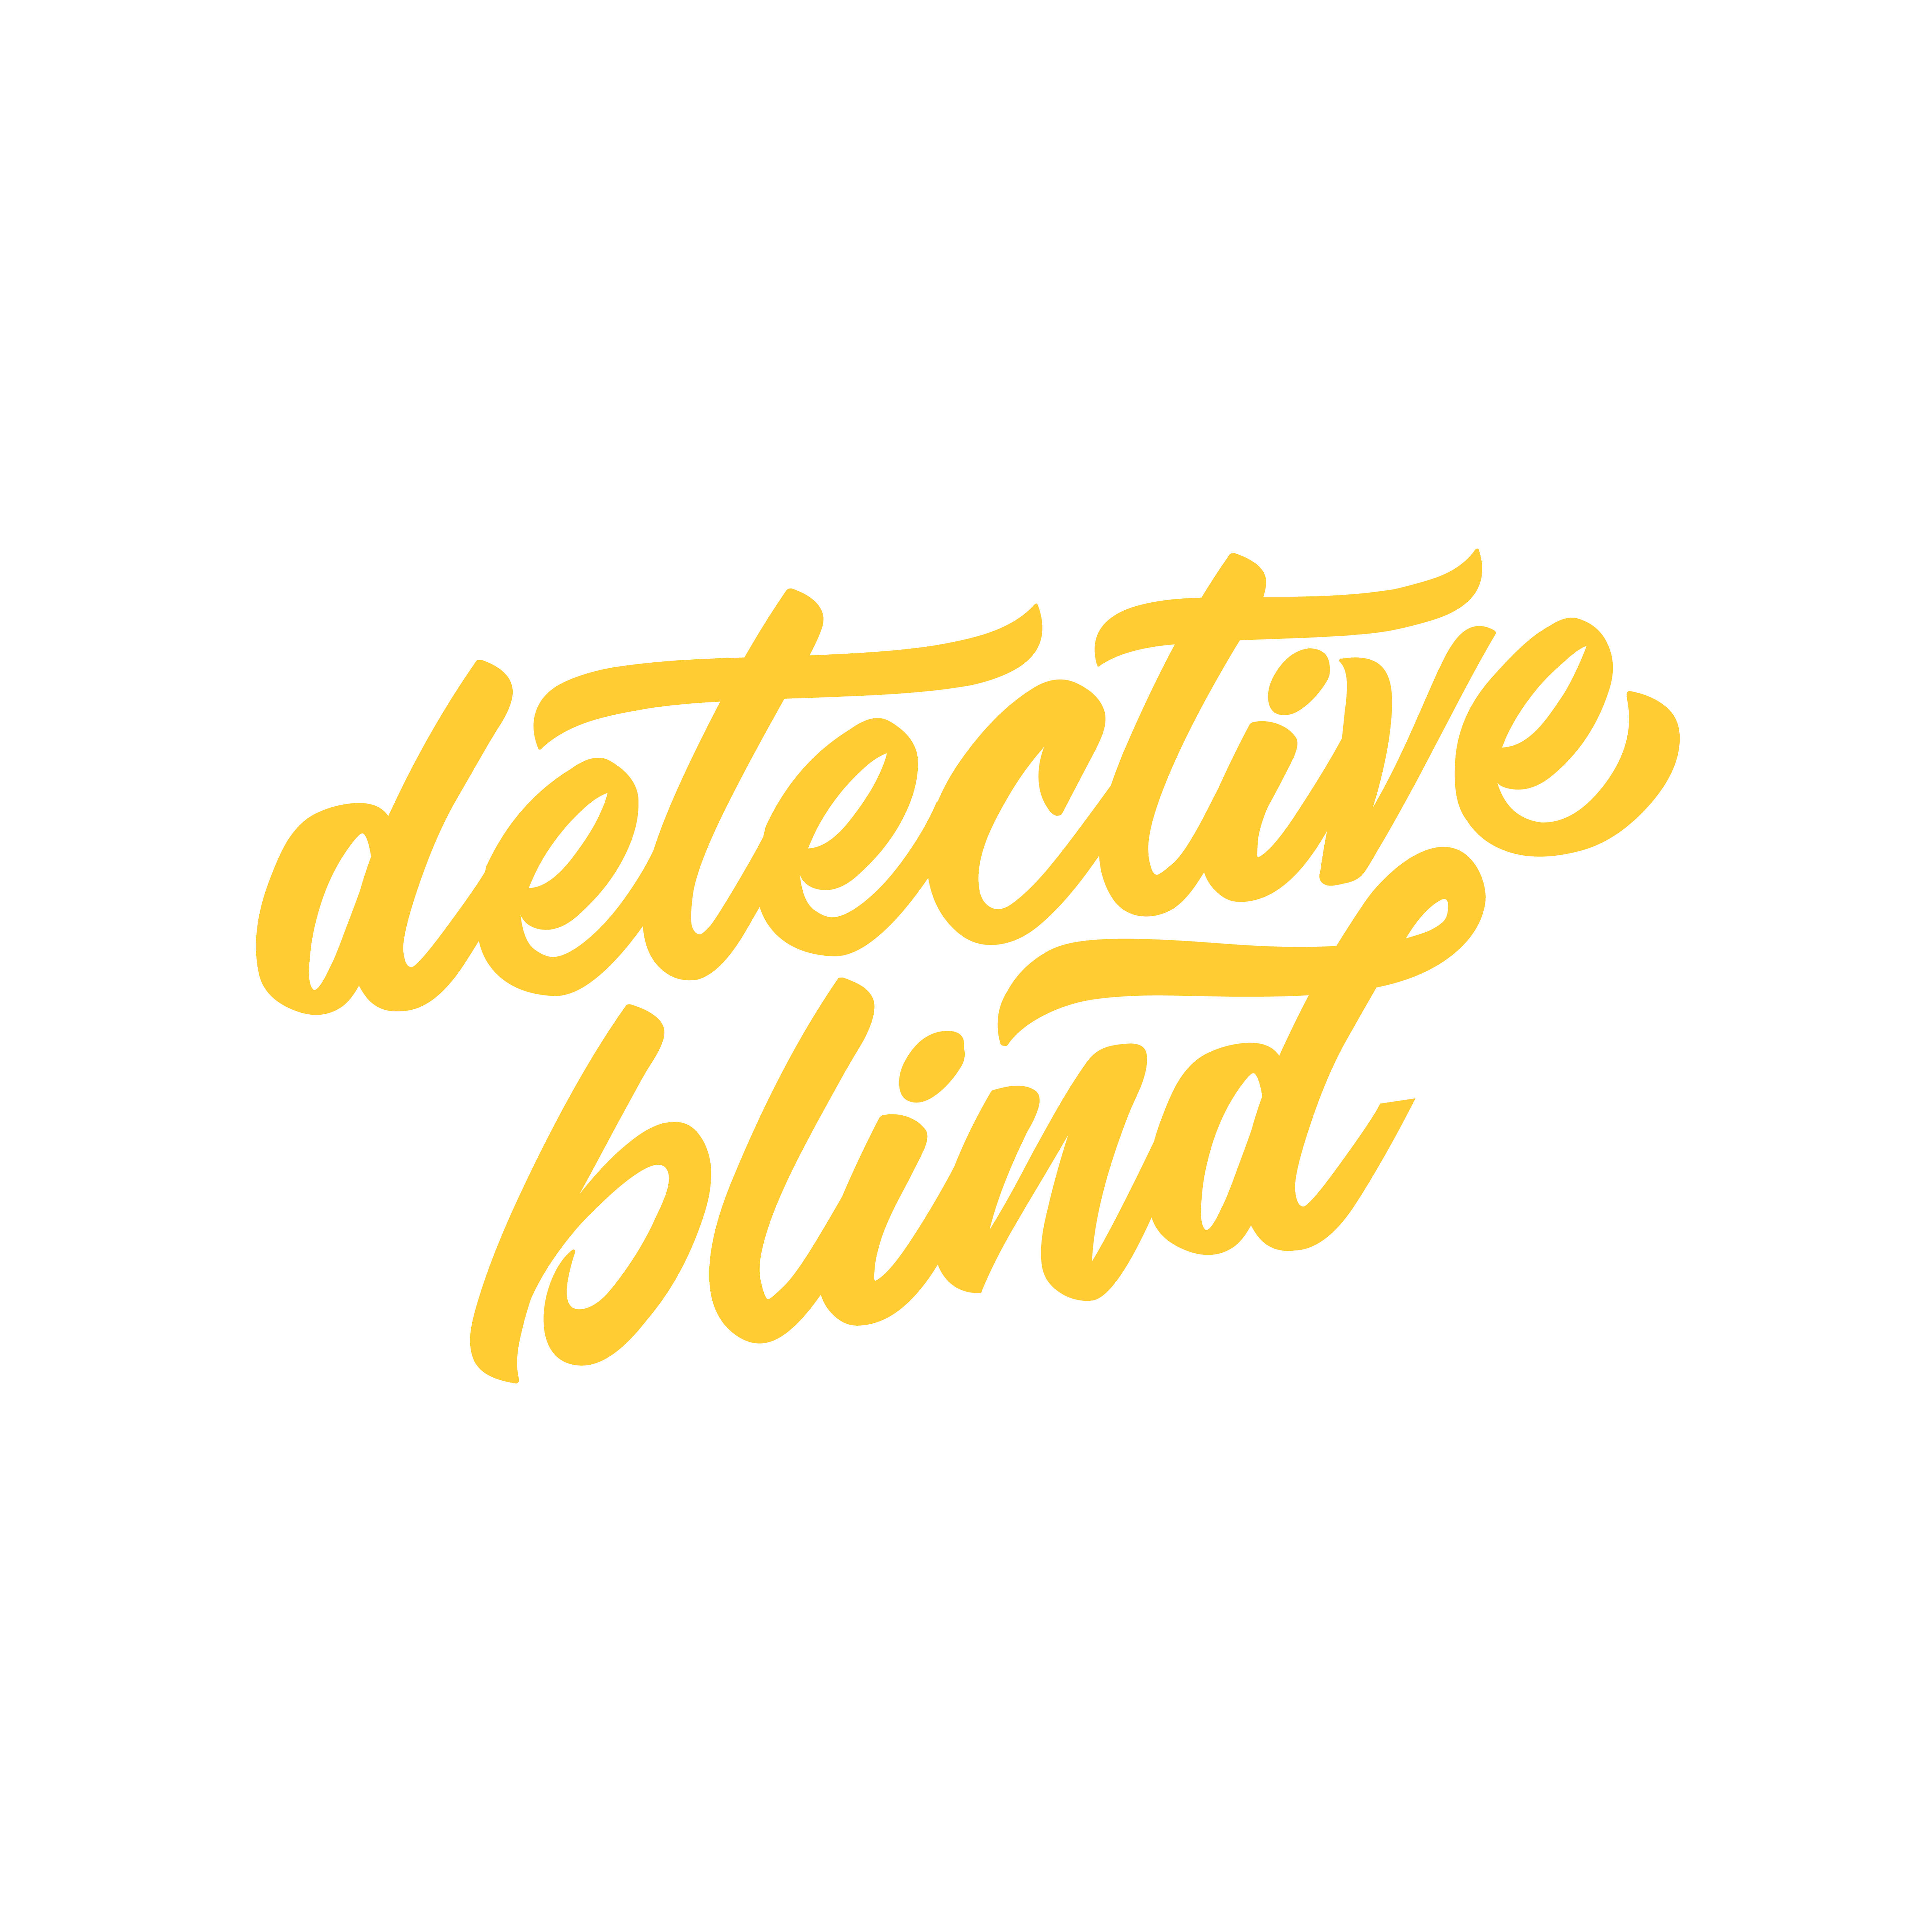 detective blind